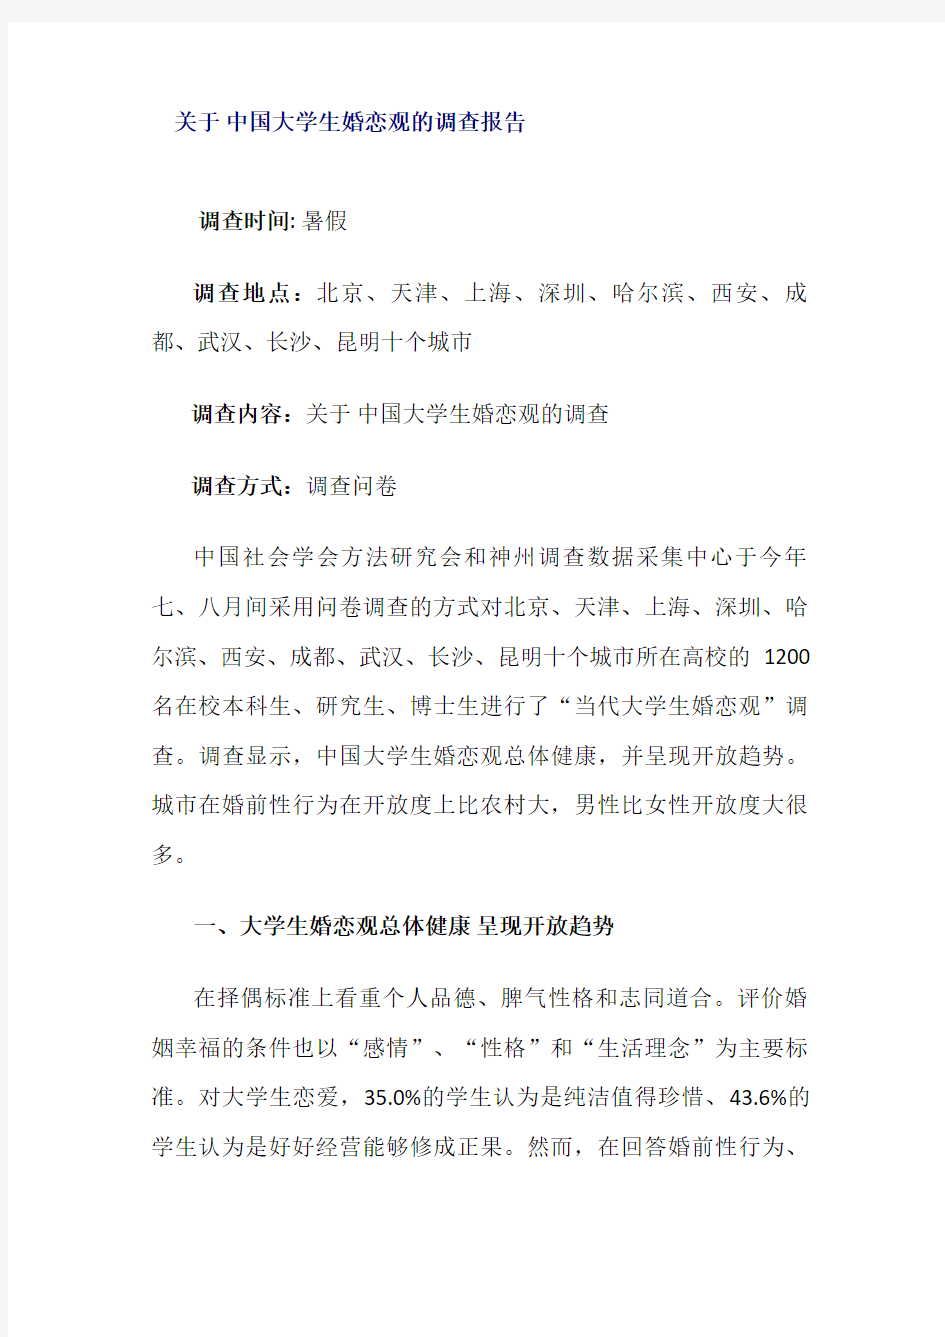 关于中国大学生婚恋观的调查报告